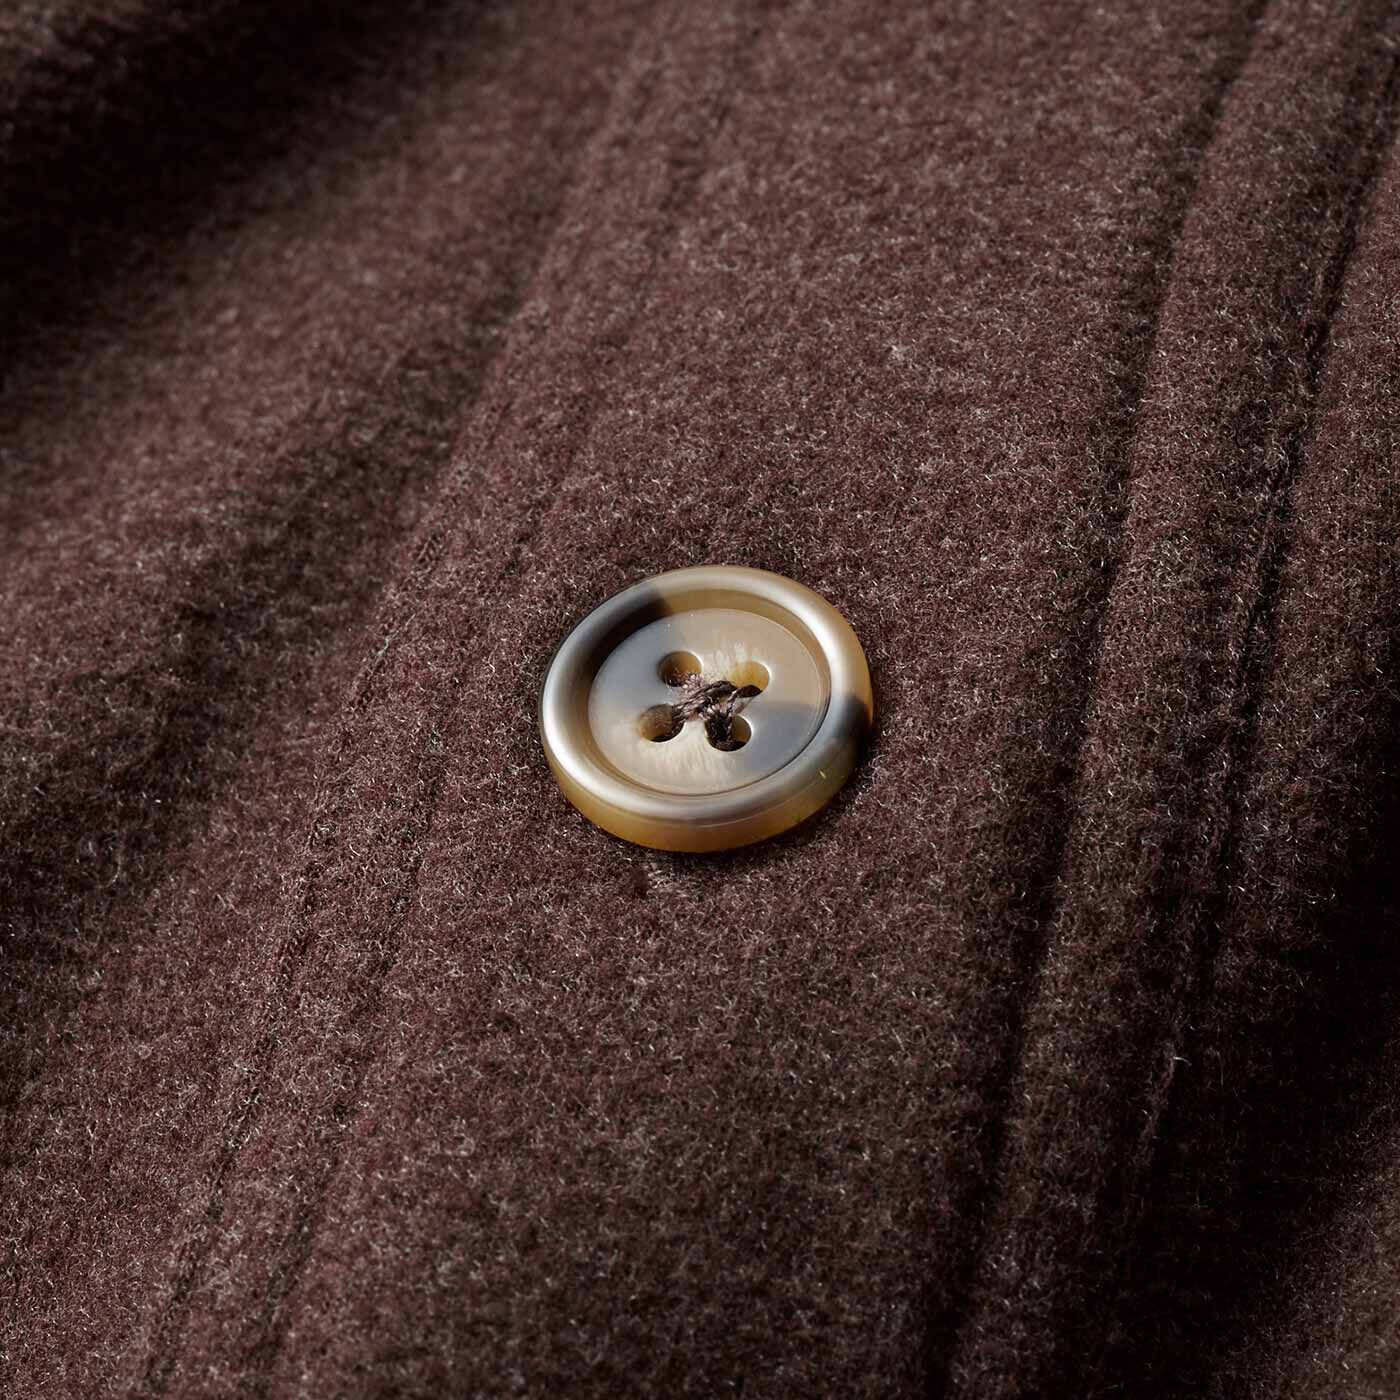 Real Stock|ウールシャツのような風合いの のびのびあったか起毛CPOシャツジャケット〈レトロブラウン〉|ボタンはべっ甲風。